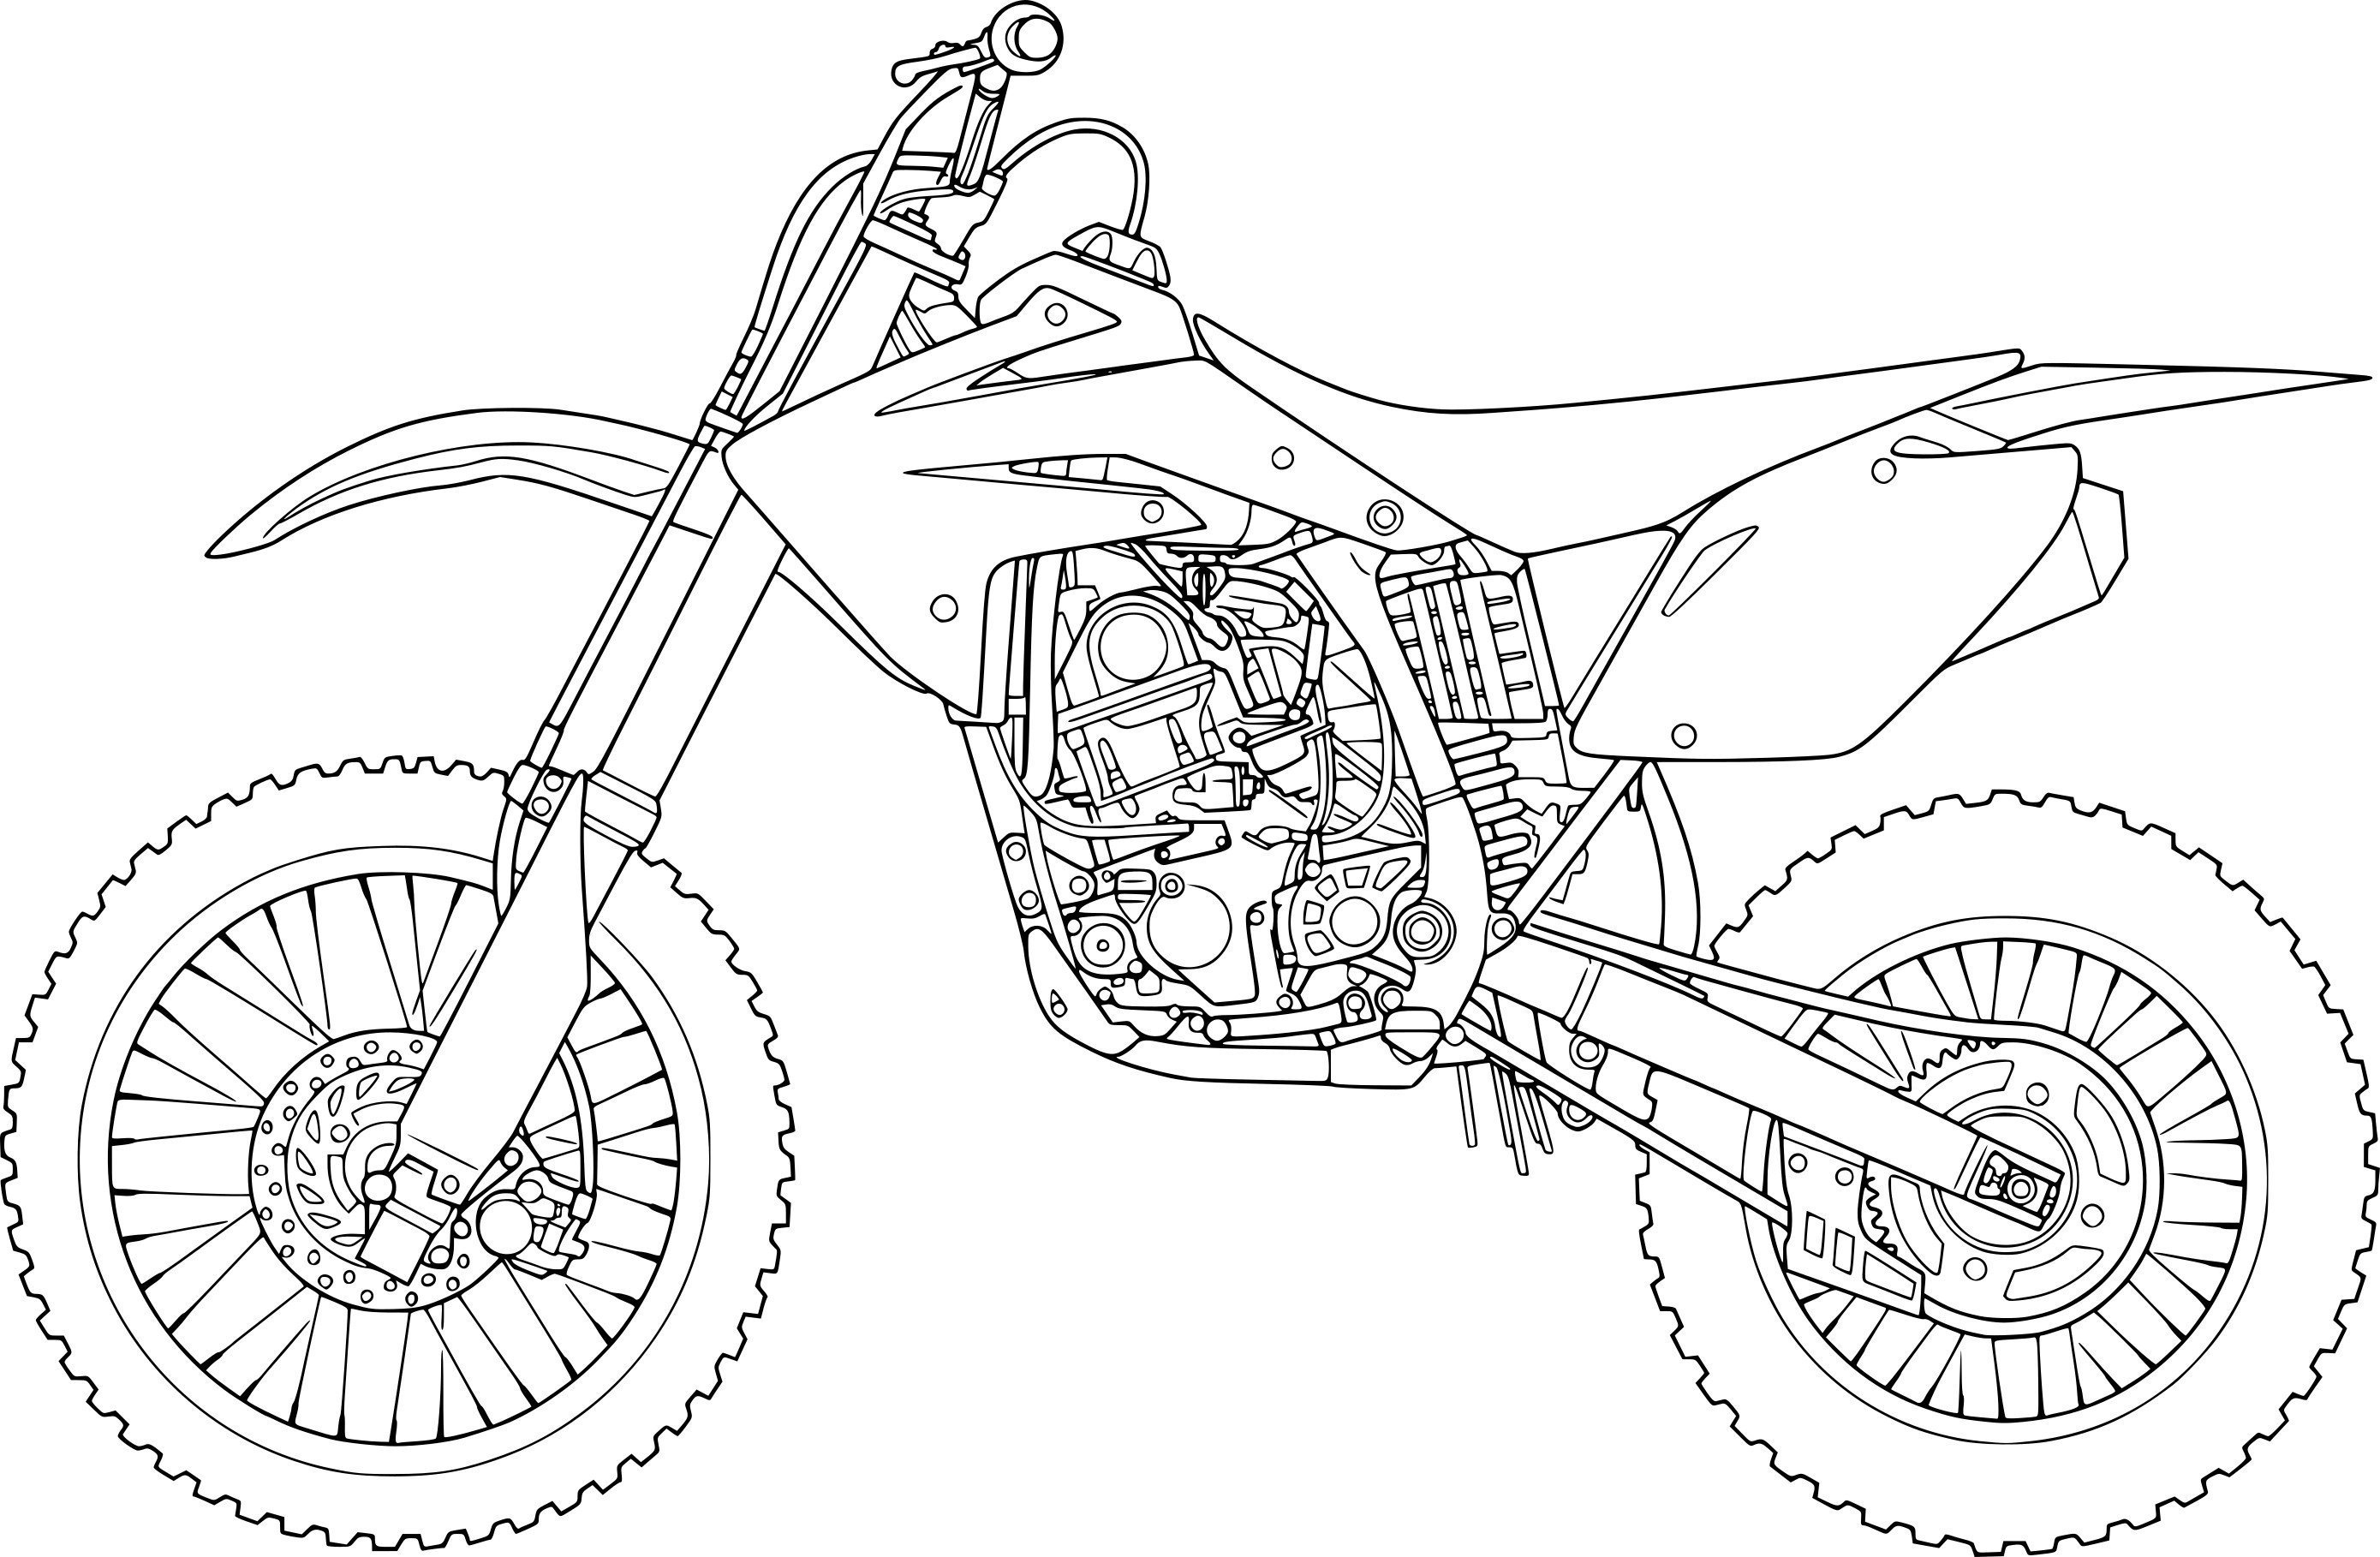 Нужны чертежи мотоцикла BMW времен ВОВ